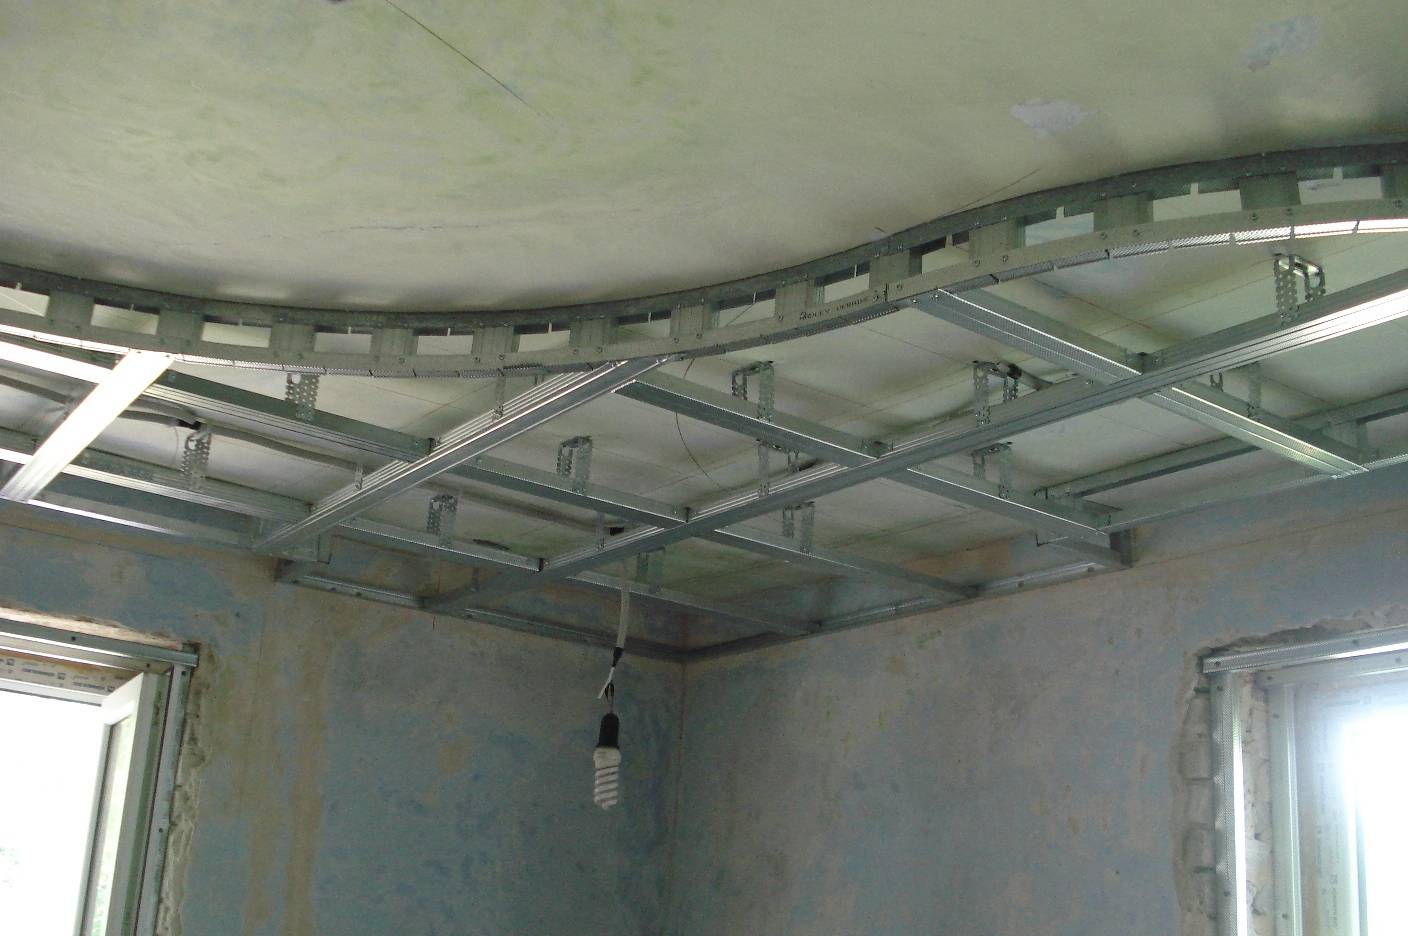 Подвесной потолок своими руками: как делать навесной потолок, пошаговая инструкция, как сделать, собрать каркас